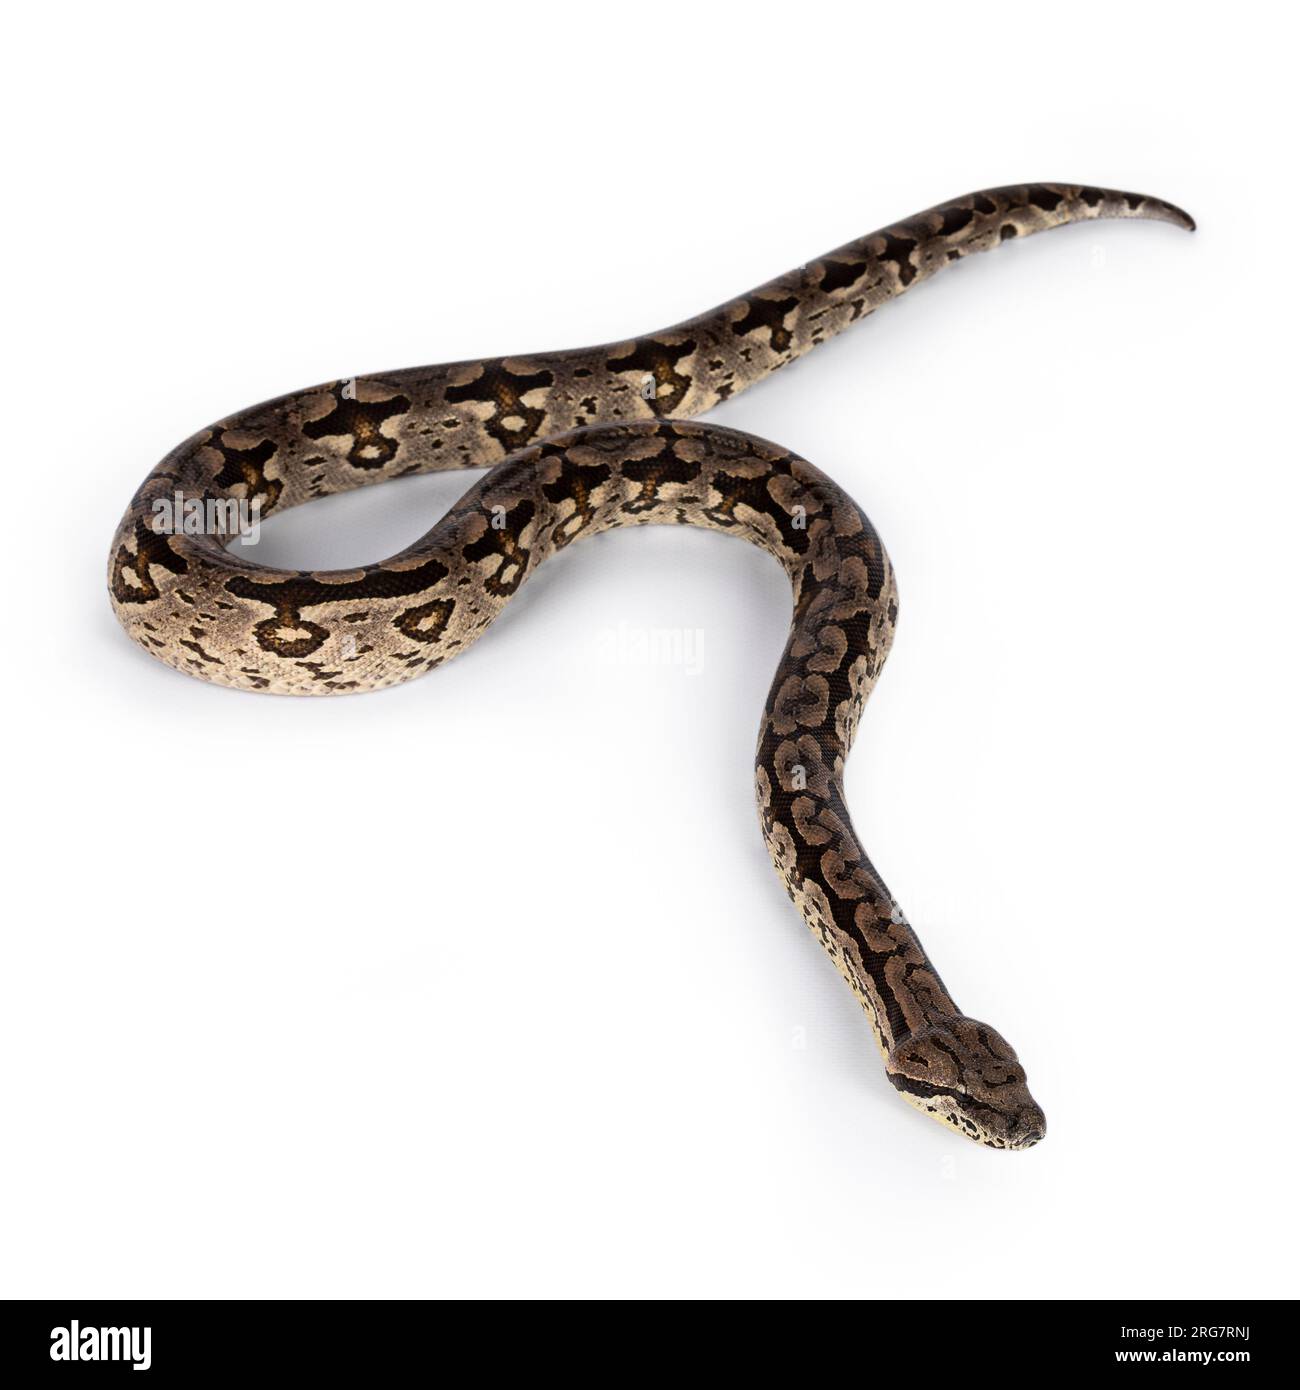 Photo du corps entier d'un serpent Boa en mouvement. Isolé sur fond blanc. Banque D'Images